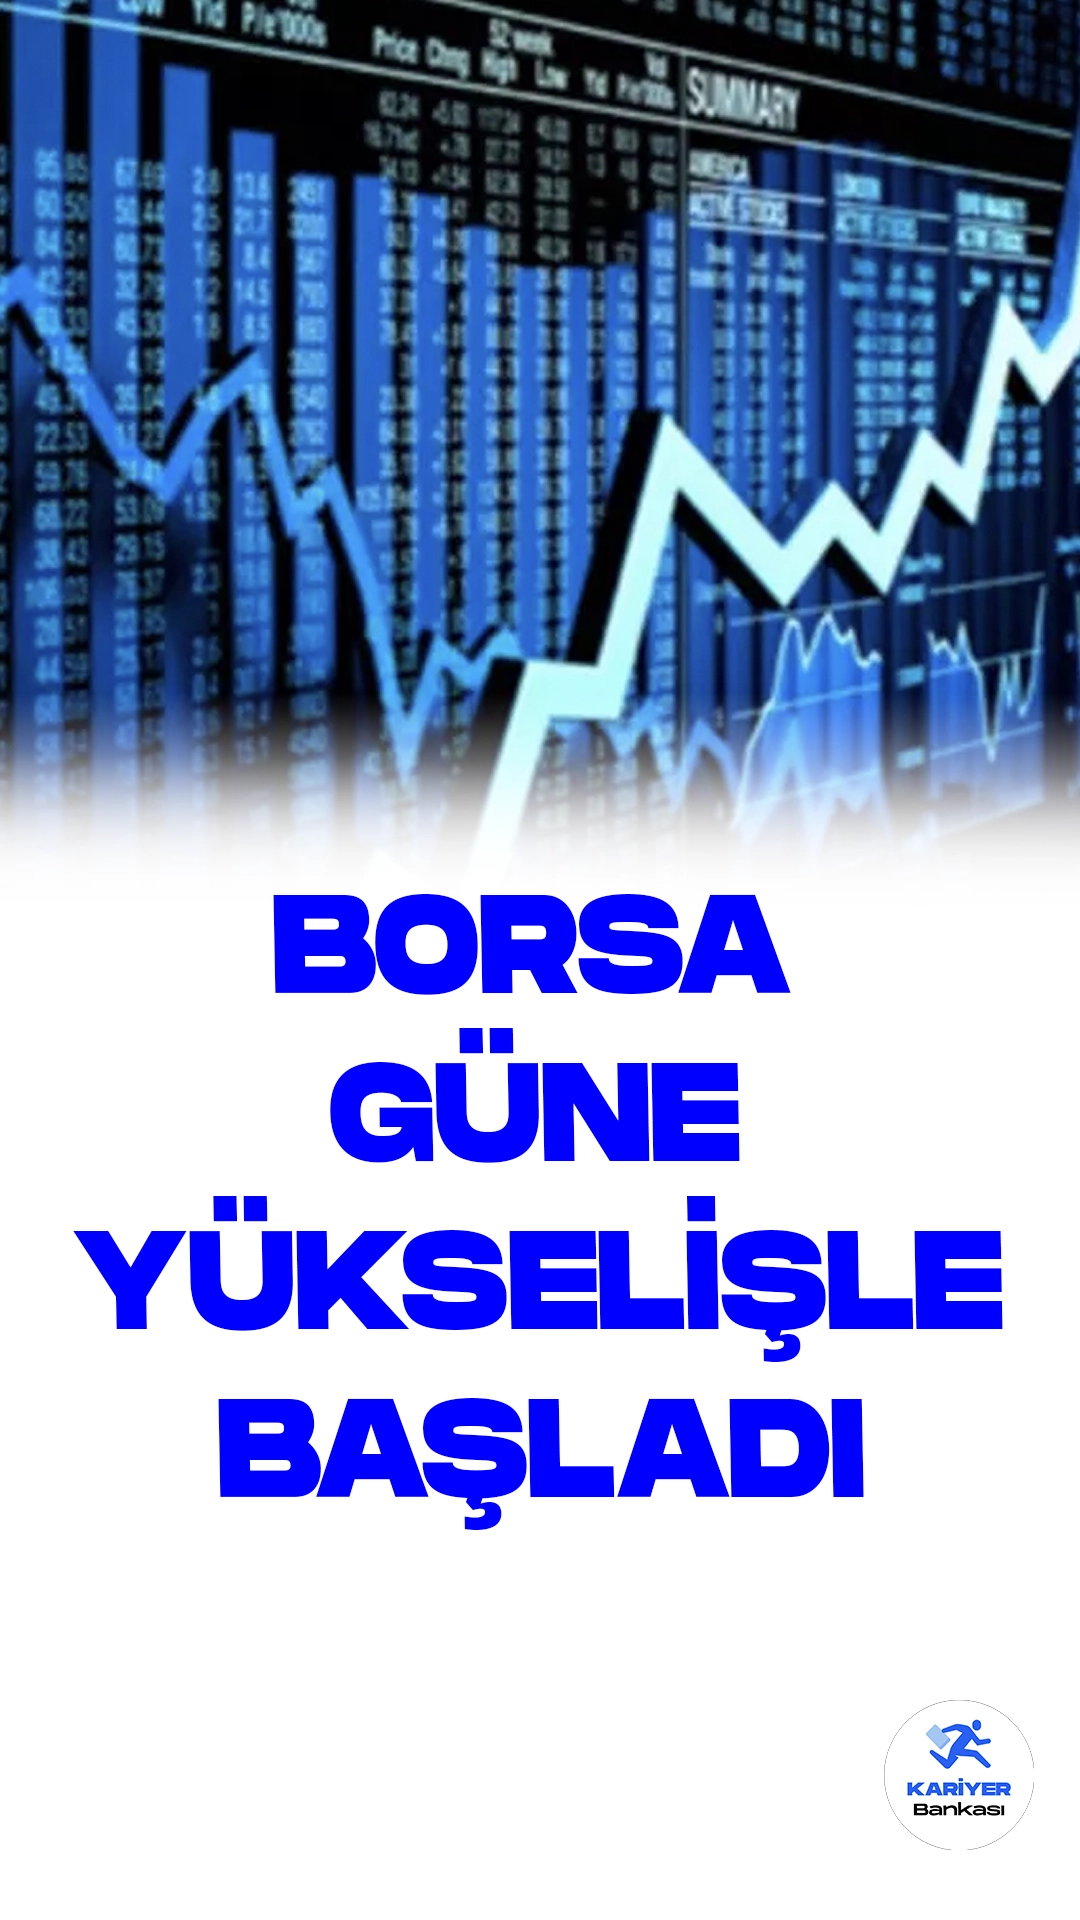 Borsa İstanbul'da BIST 100 Endeksi Güne Yükselişle Başladı.Borsa İstanbul'da BIST 100 endeksi, güne yüzde 0,85 artışla 7.592,40 puandan başladı. Açılışta önceki kapanışa göre 63,83 puan artarak yüzde 0,85 değer kazandı.